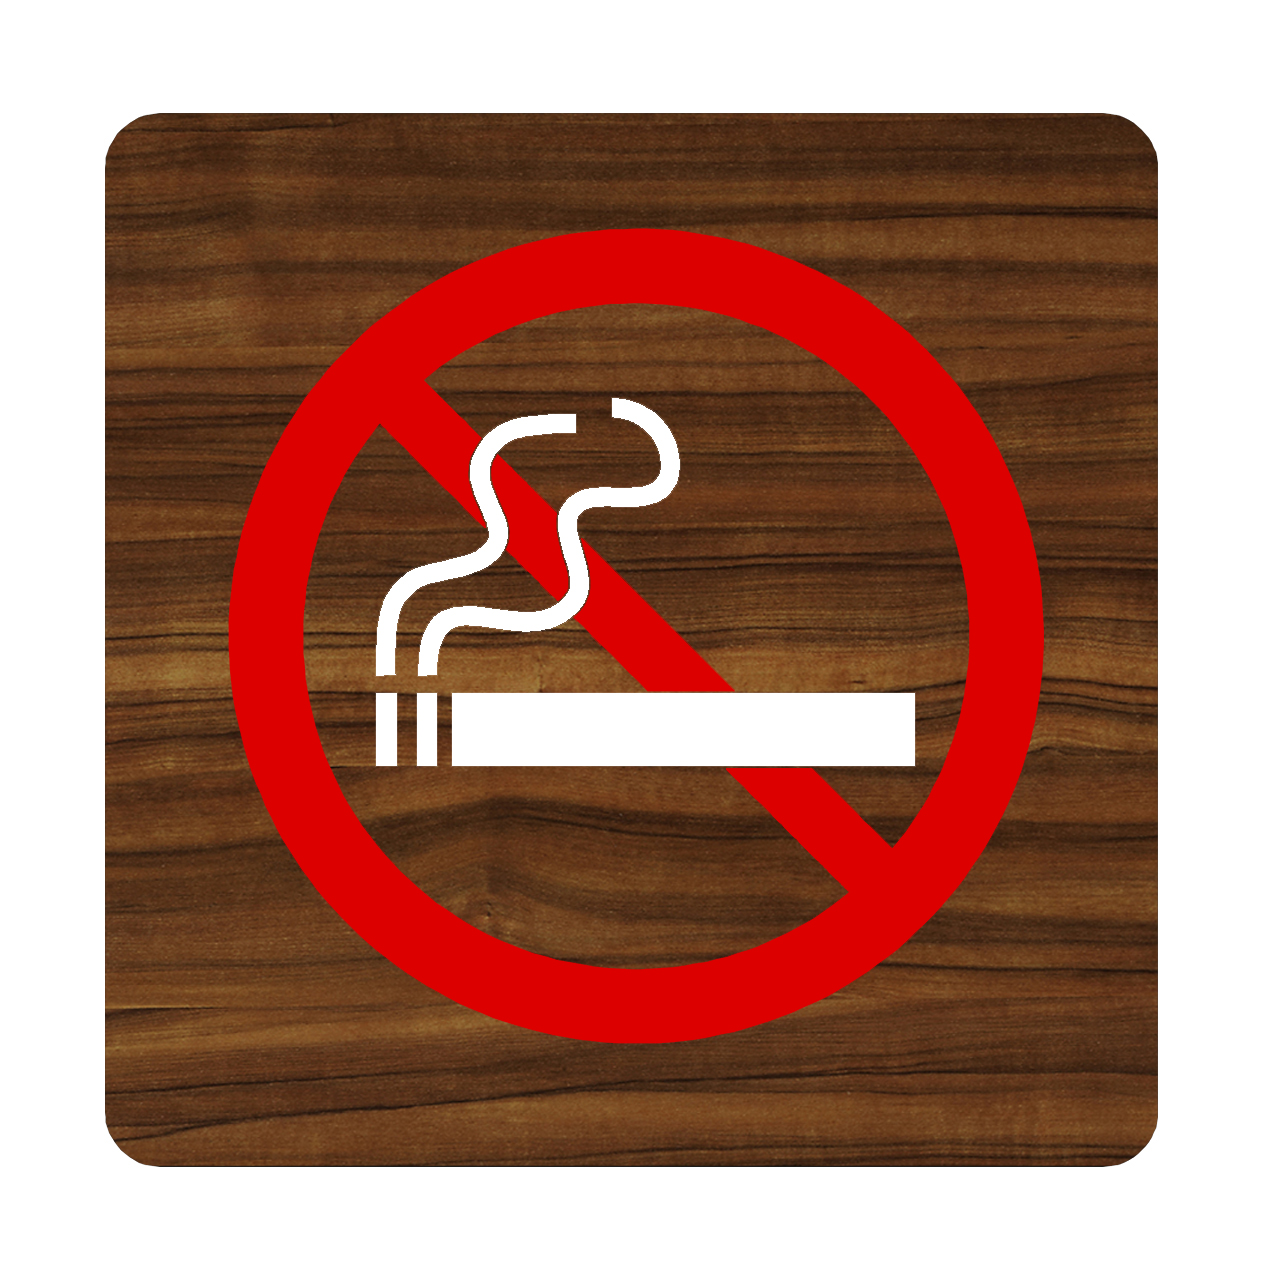 تابلو سیگار نکشید